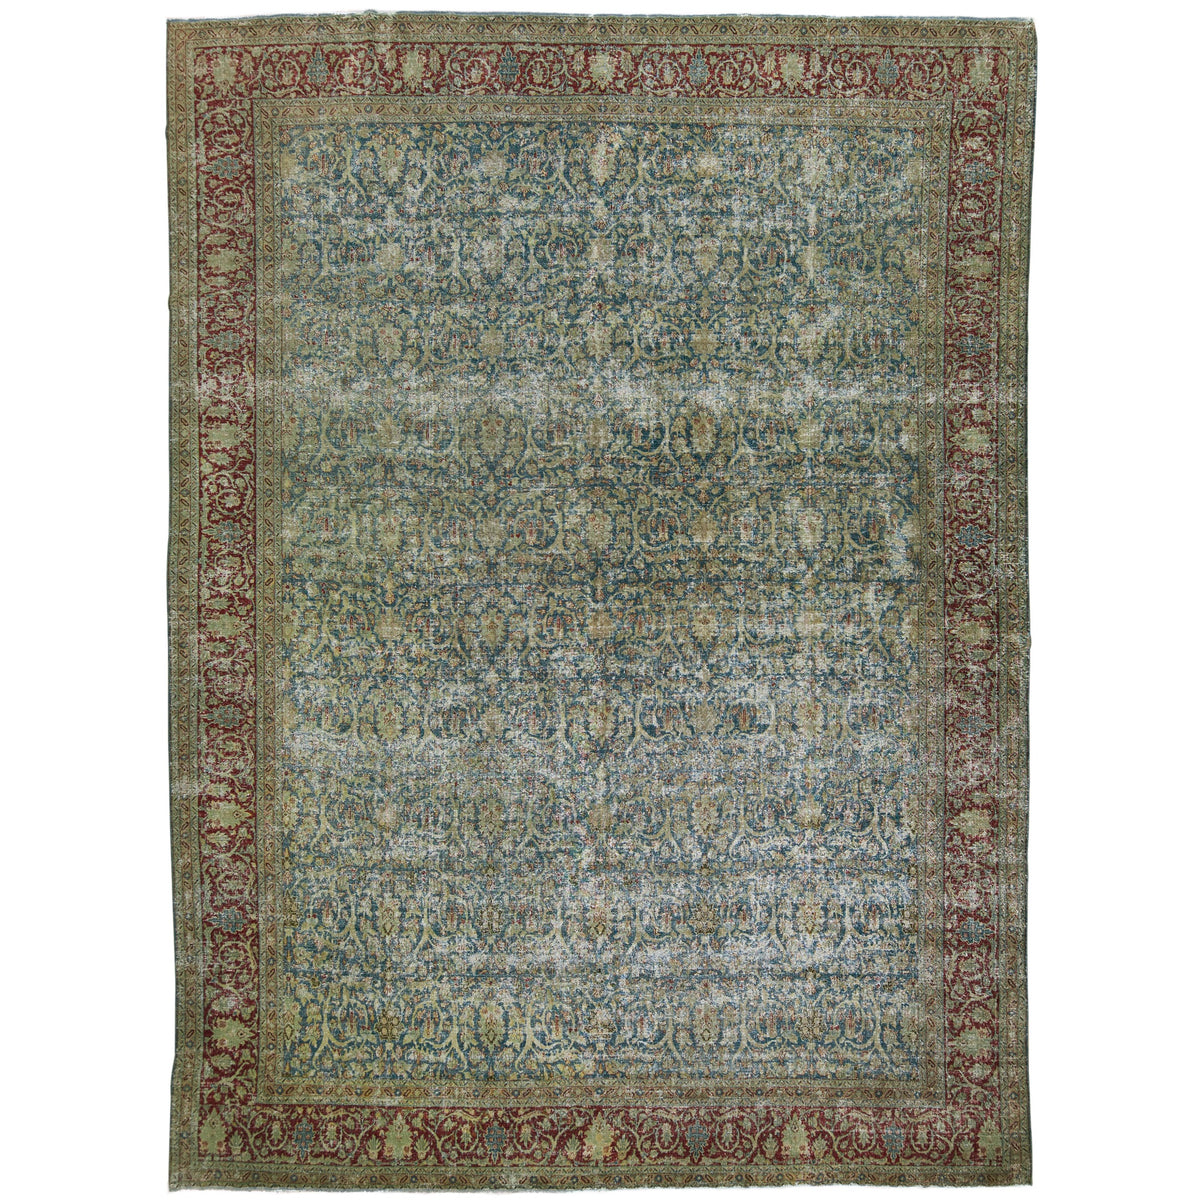 Vinaya - A Tapestry of Tabriz | Kuden Rugs